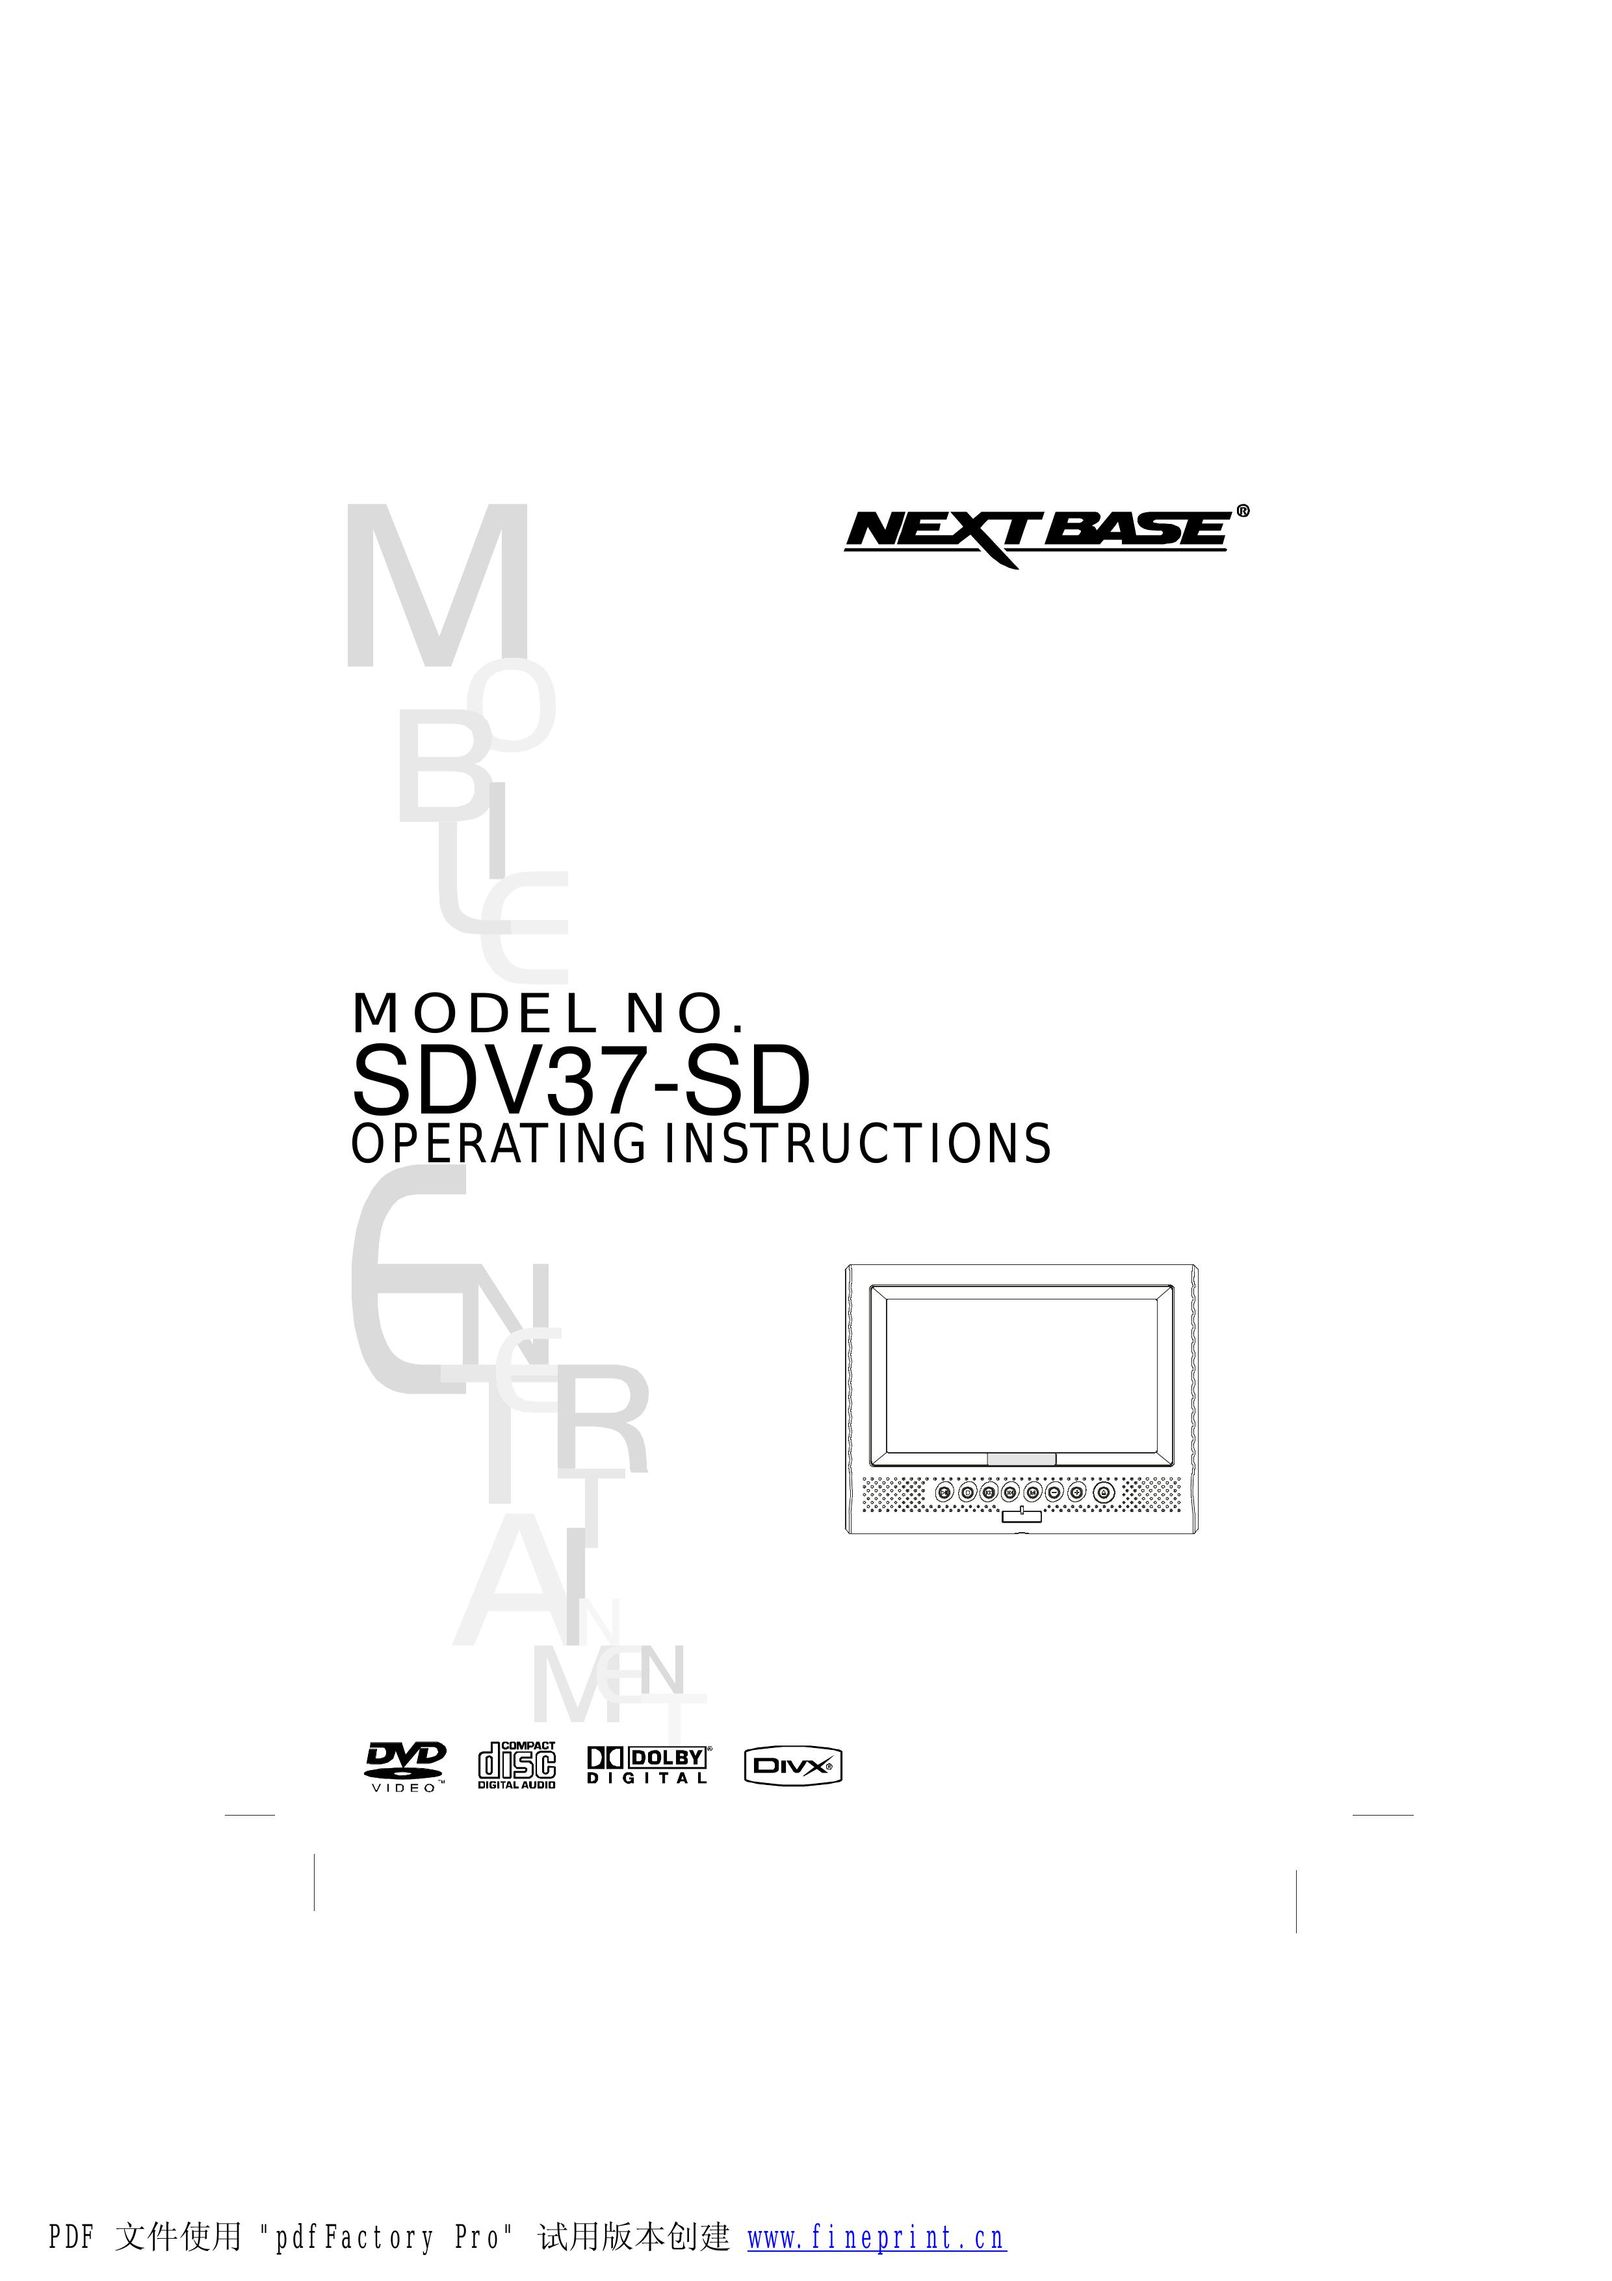 NextBase SDV37-SD Portable DVD Player User Manual